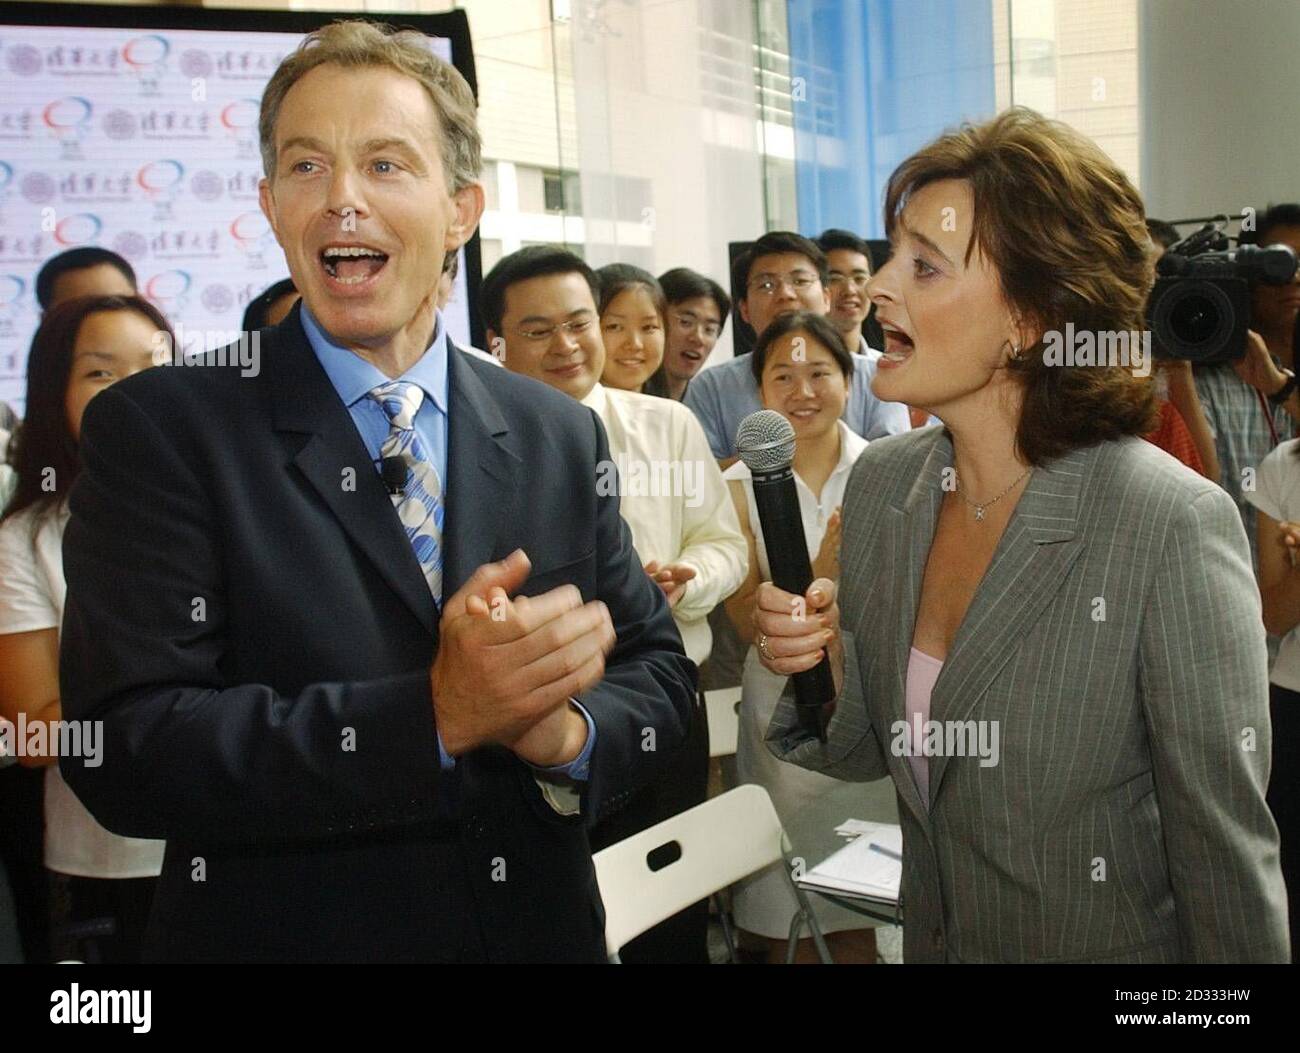 Il primo ministro britannico Tony Blair reagisce mentre sua moglie, Cherie, canta "quando sono 64" dai Beatles agli studenti dell'Università di Tsinghua a Pechino, dove ha tenuto una sessione di domande e risposte. * il primo ministro è in visita di una settimana nell'Estremo Oriente in Giappone, Corea del Sud, Cina e Hong Kong. Foto Stock